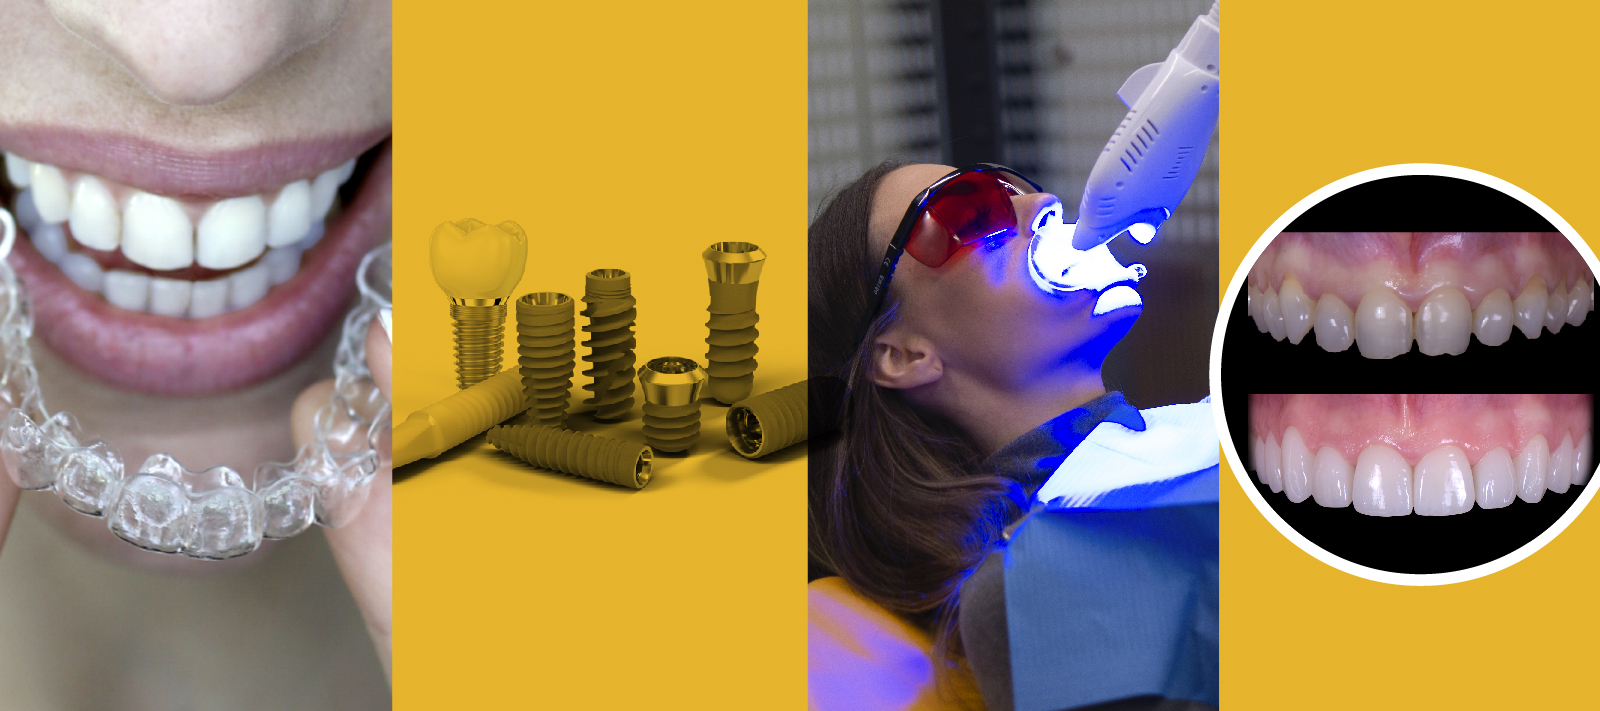 Cuatro tratamientos de odontología estética: Ortodoncia invisible, carillas, implantes y blanqueamiento